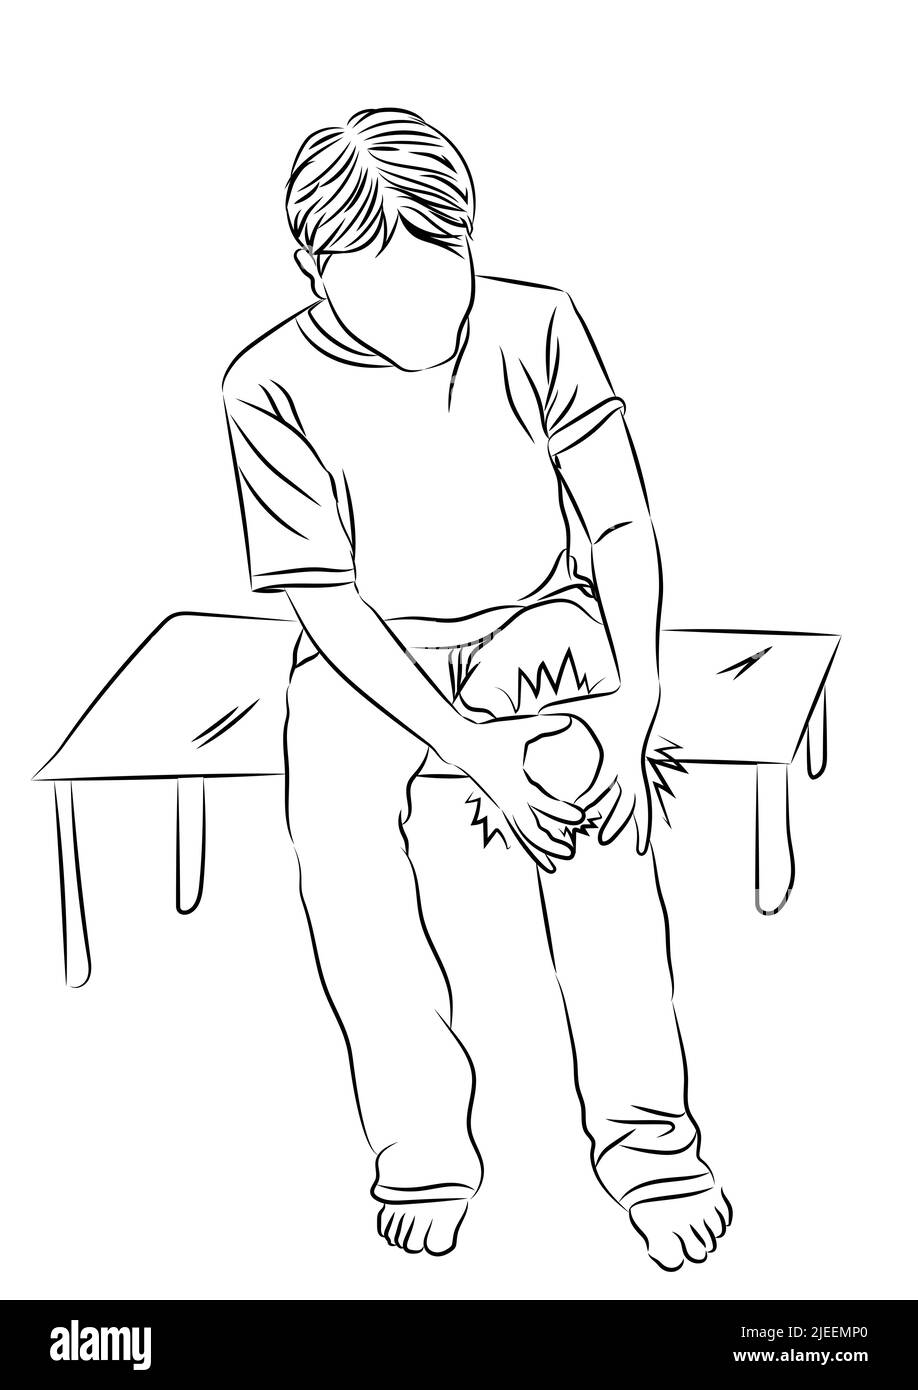 Zeichnung skizzieren Mann mit Tendon Kniegelenk Probleme schmerzhaft, Schwellung Osteoarthritis der älteren Menschen oder Übung, Vektor-Illustration Stock Vektor